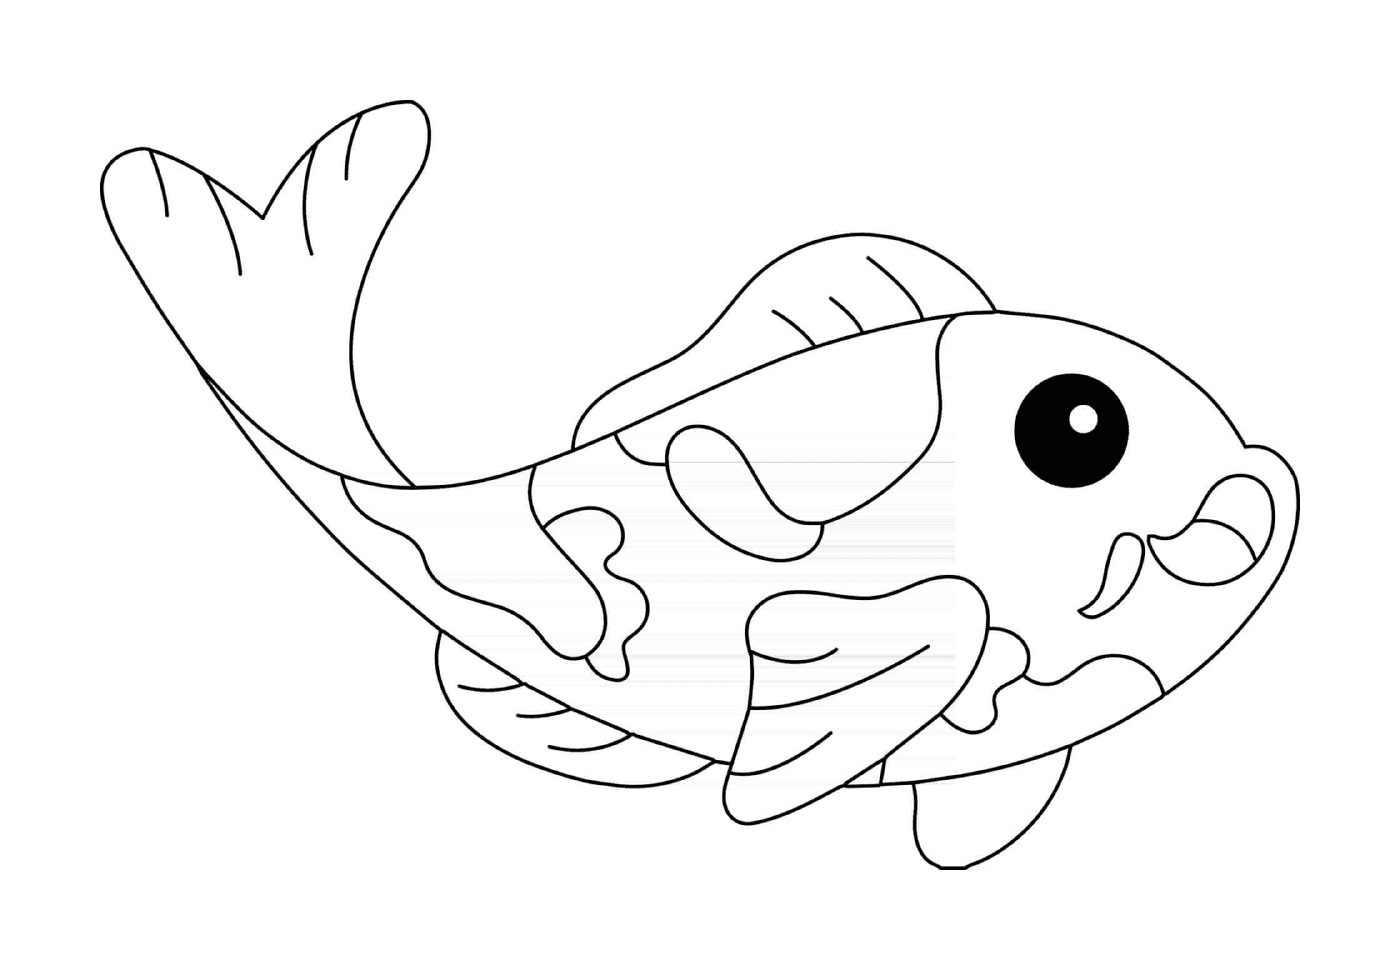  Carpa de pescado koi 